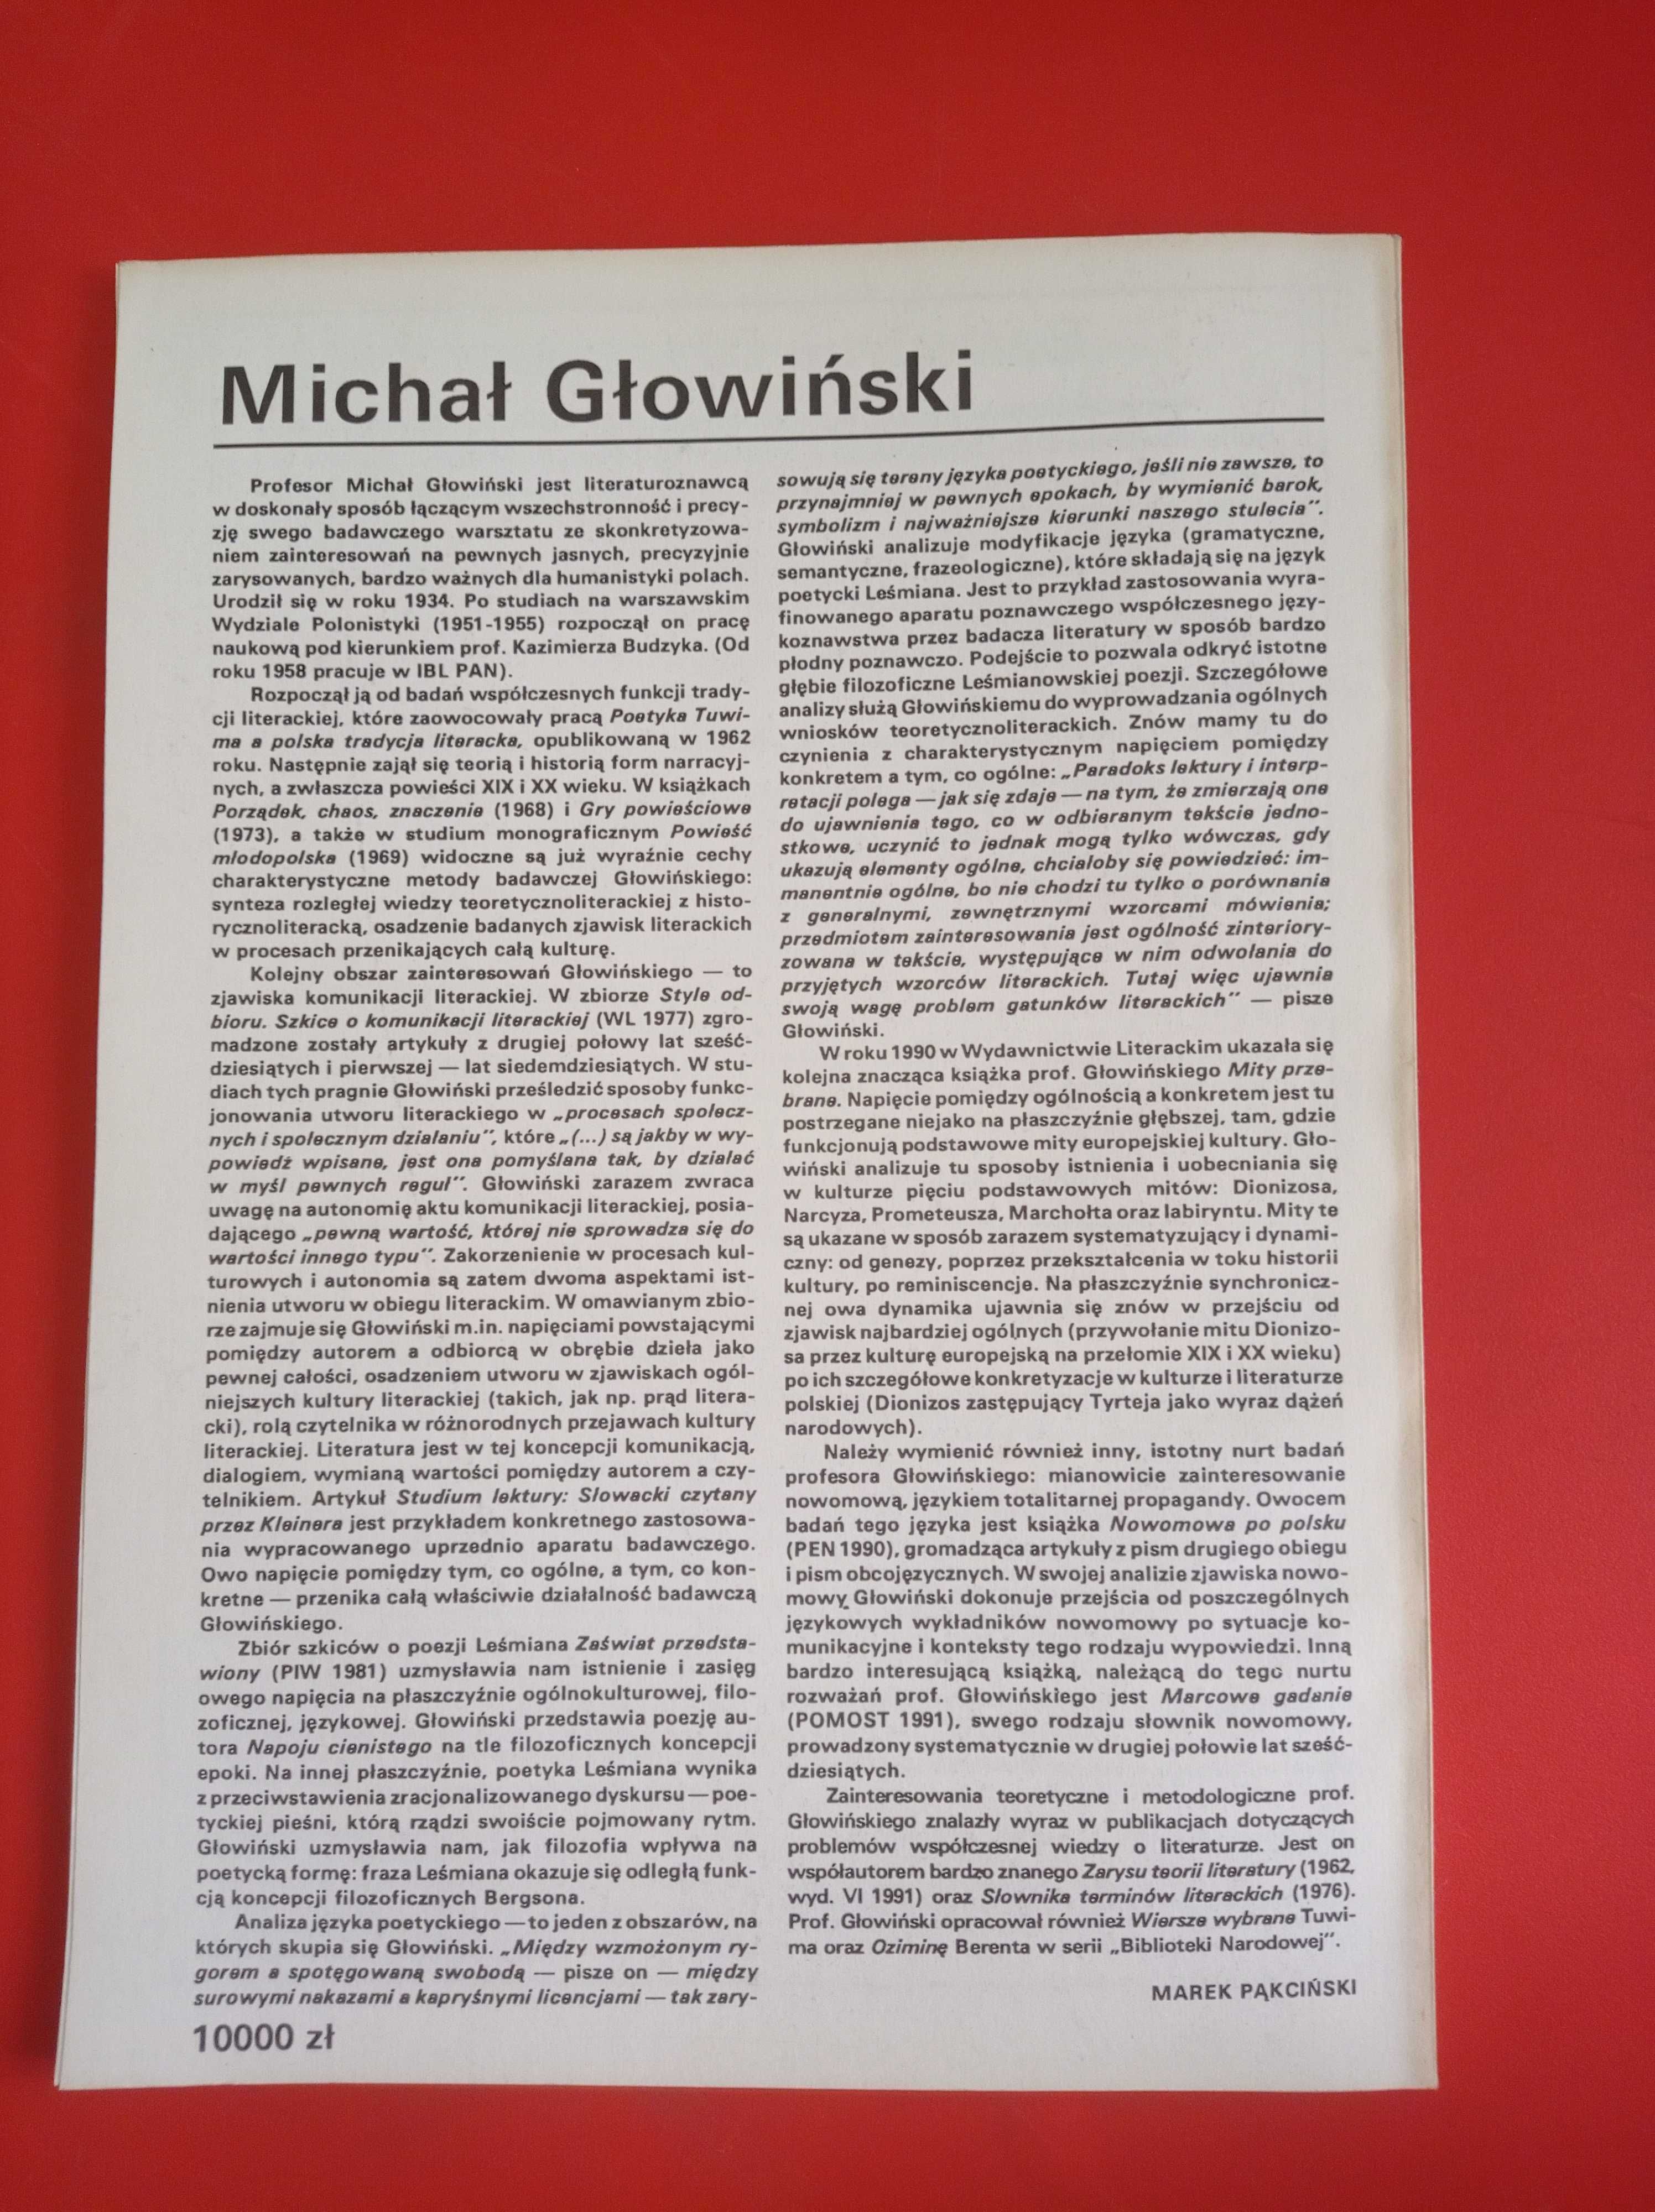 Nowe książki, nr 7, lipiec 1991, Michał Głowiński